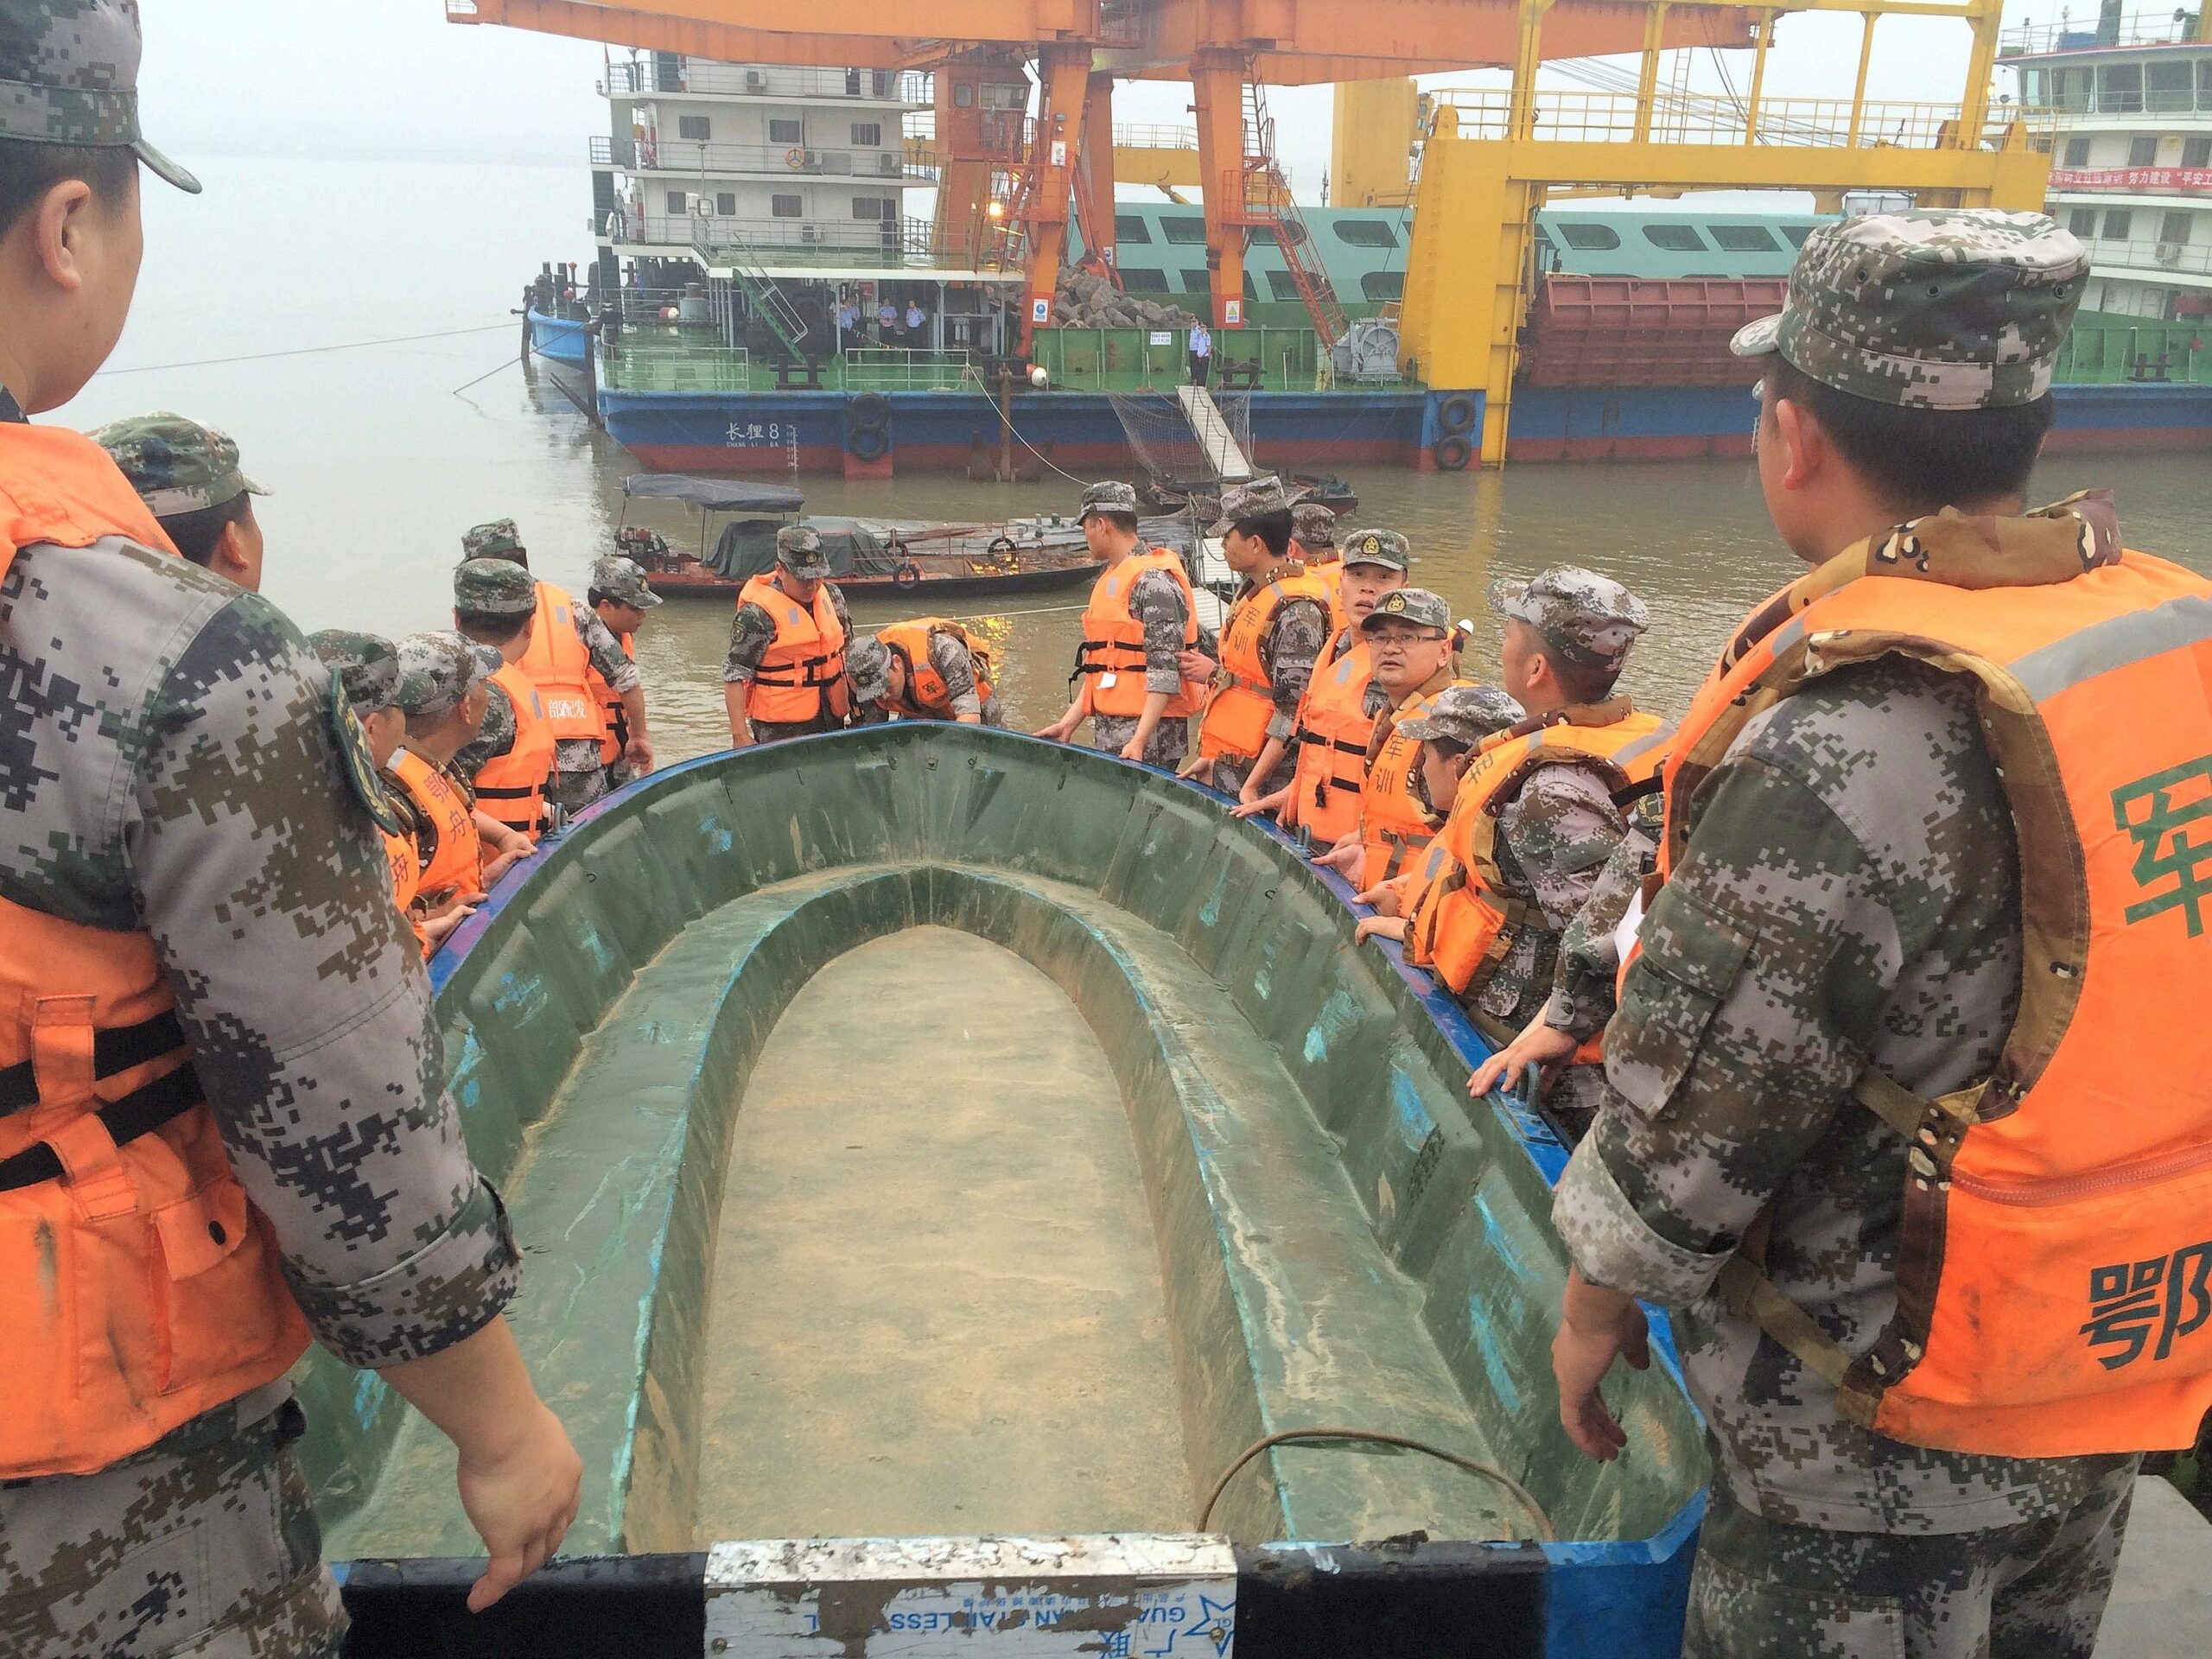 Mit Rettungsbooten versuchten Helfer Überlebende zu finden.